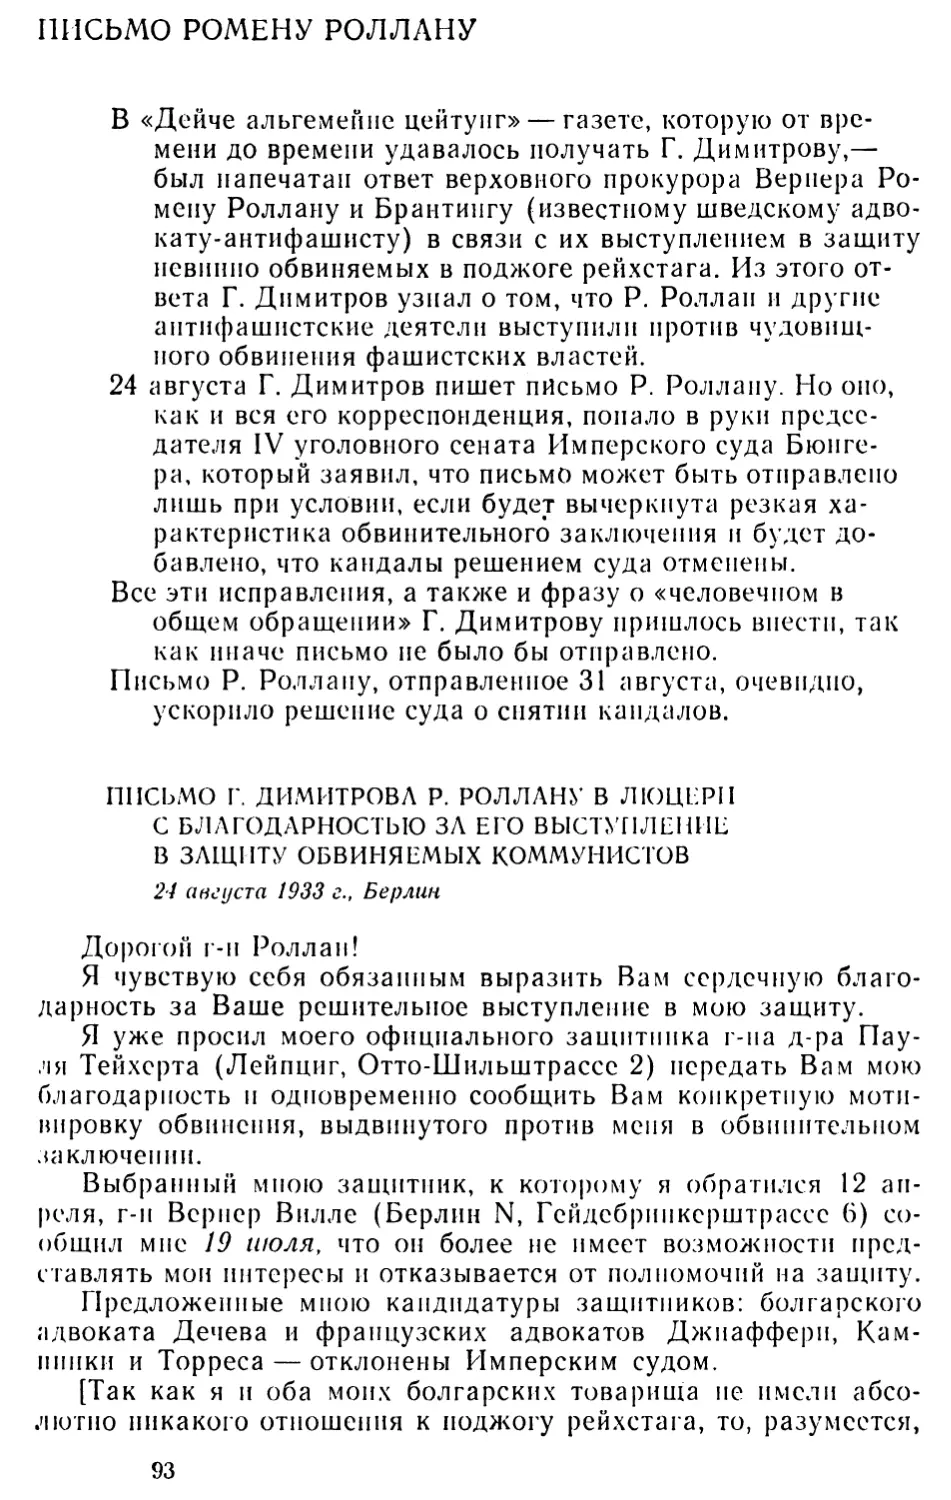 Письмо Ромену Роллану
Письмо Г. Димитрова Р. Роллану в Люцерн с благодарностью за его выступление в защиту обвиняемых коммунистов. 24 августа 1933 г